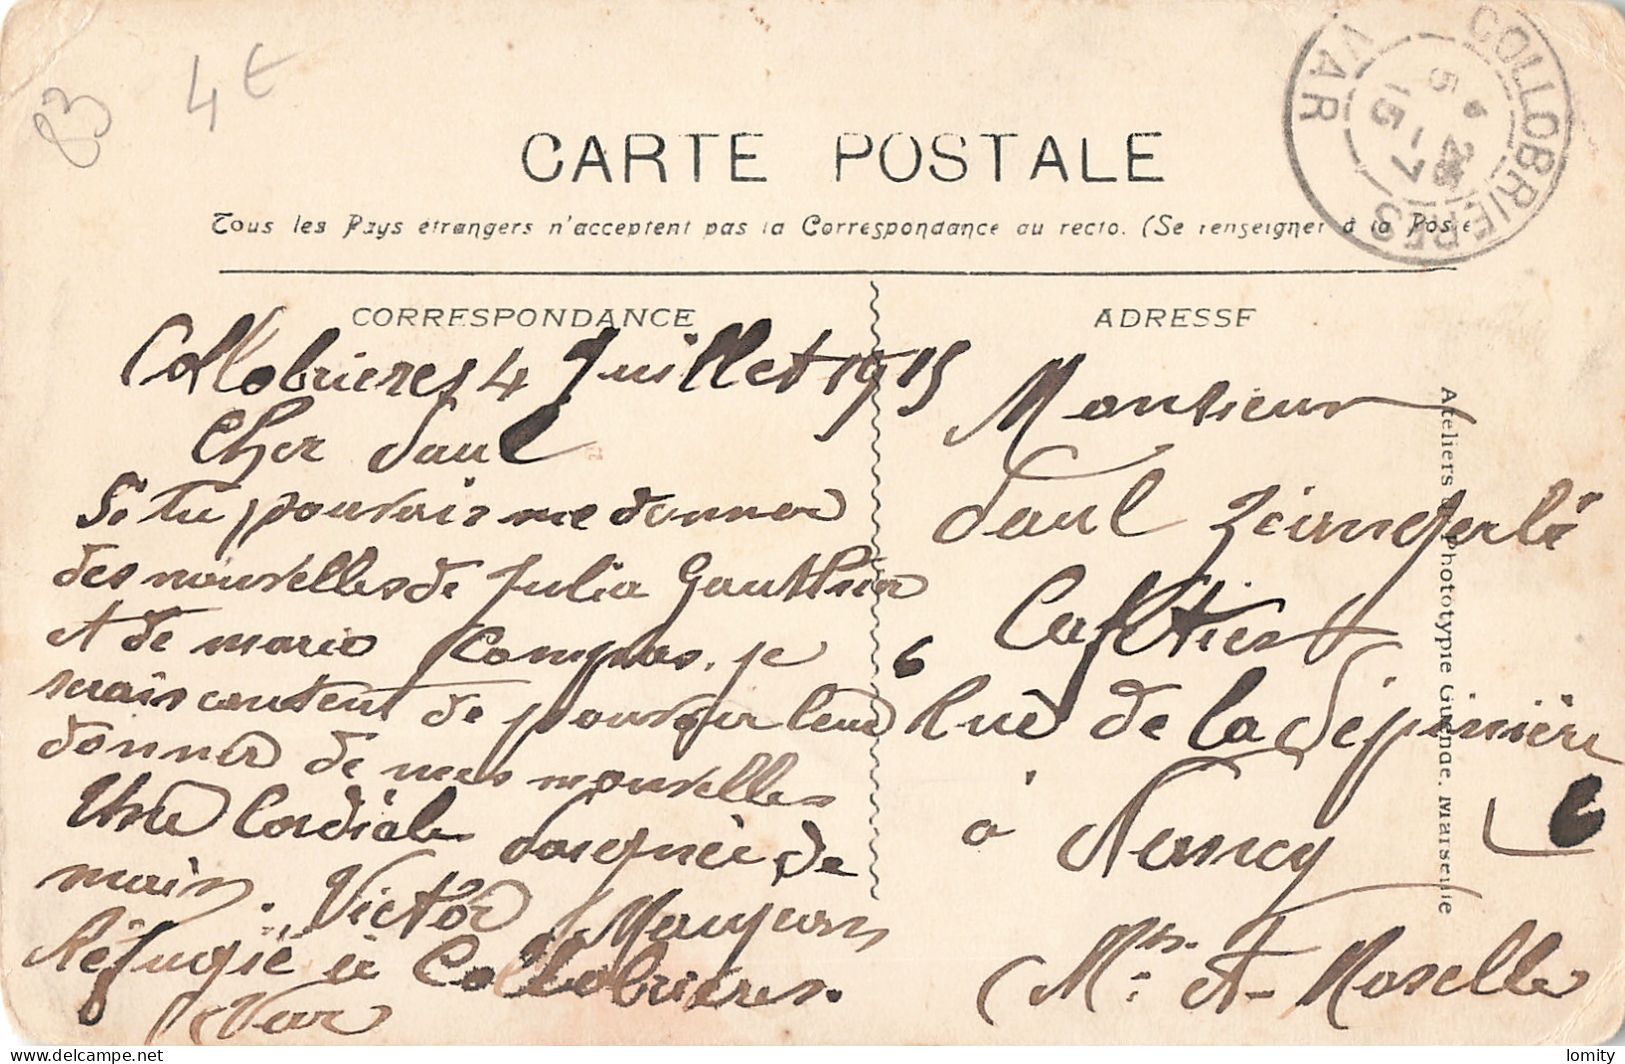 Destockage lot de 11 cartes postales CPA du Var Toulon Hyeres Tamaris Manteau Roquefavour